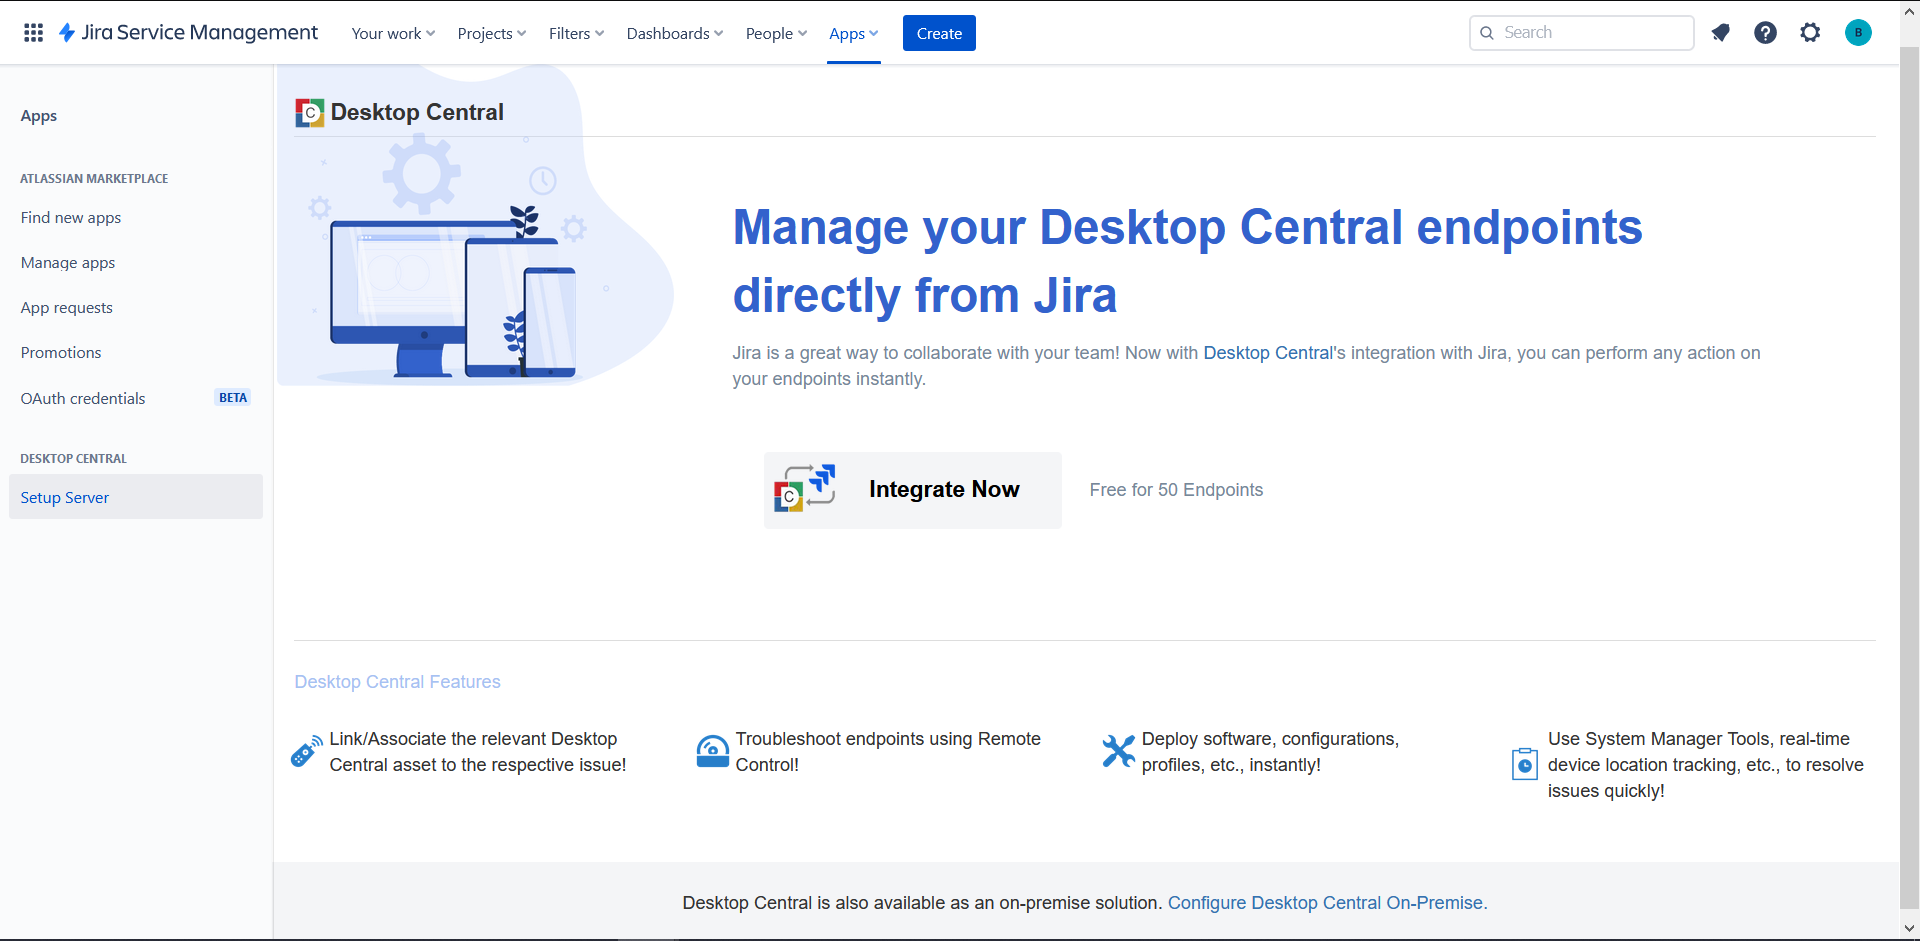 UEM Central Cloud - Jira Service Management Cloud Integration